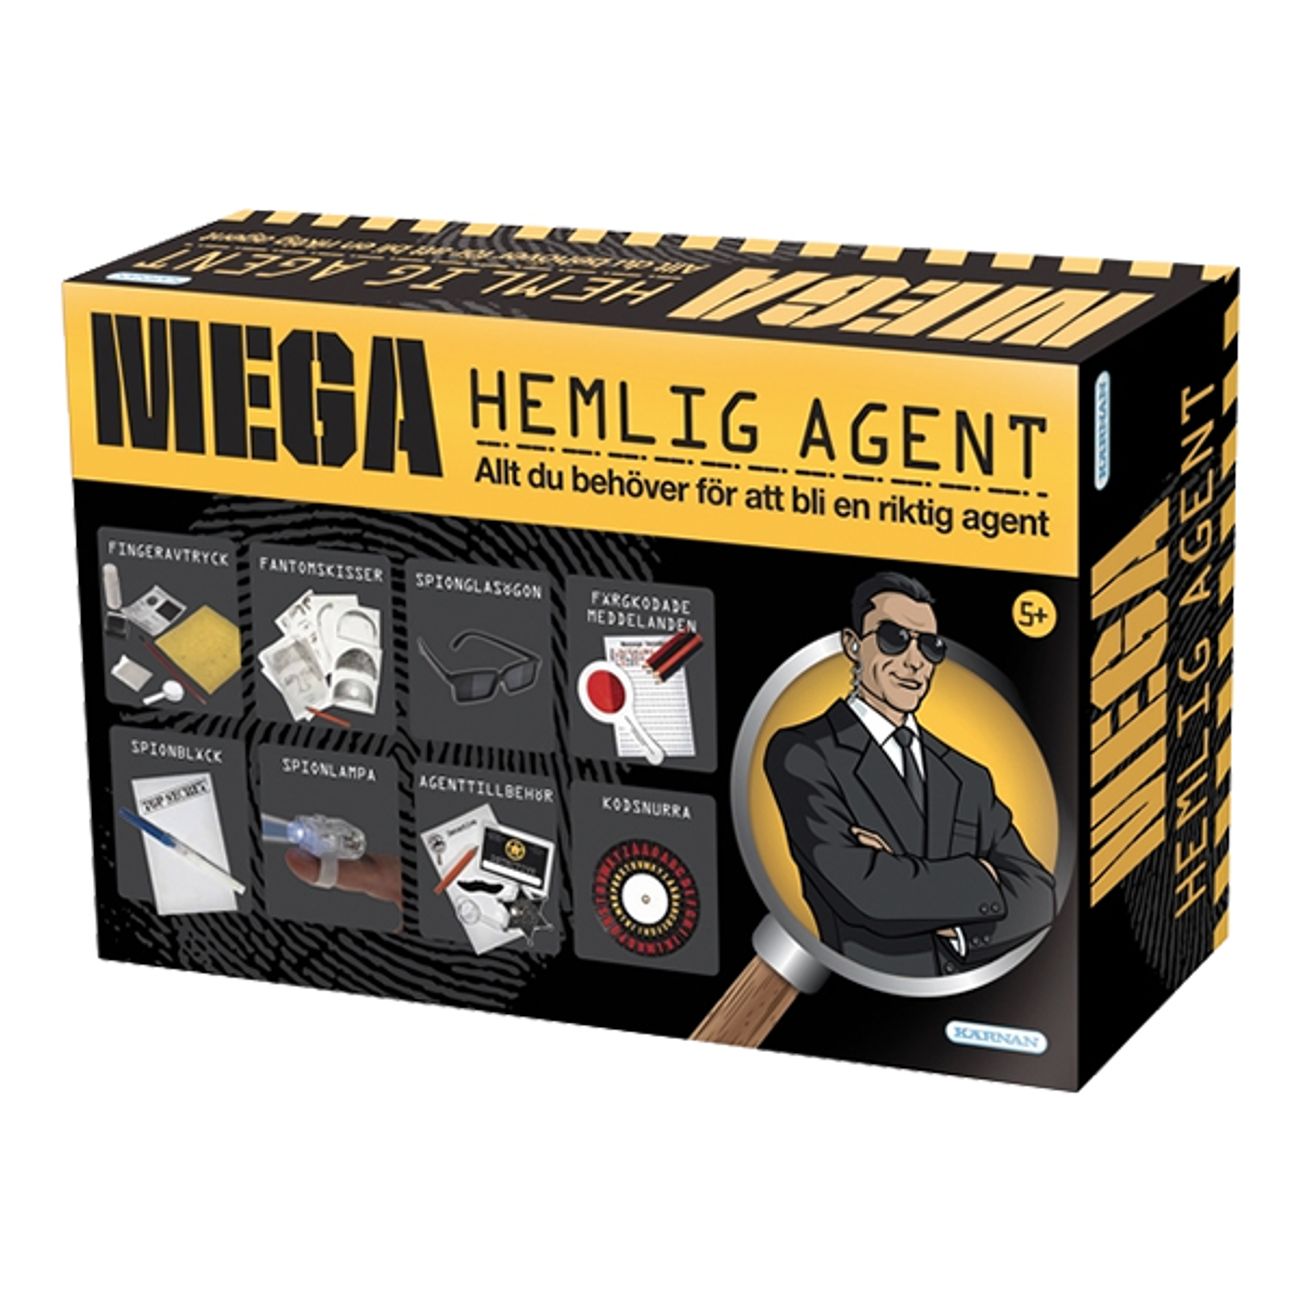 megahemlig-agent-ladan-1